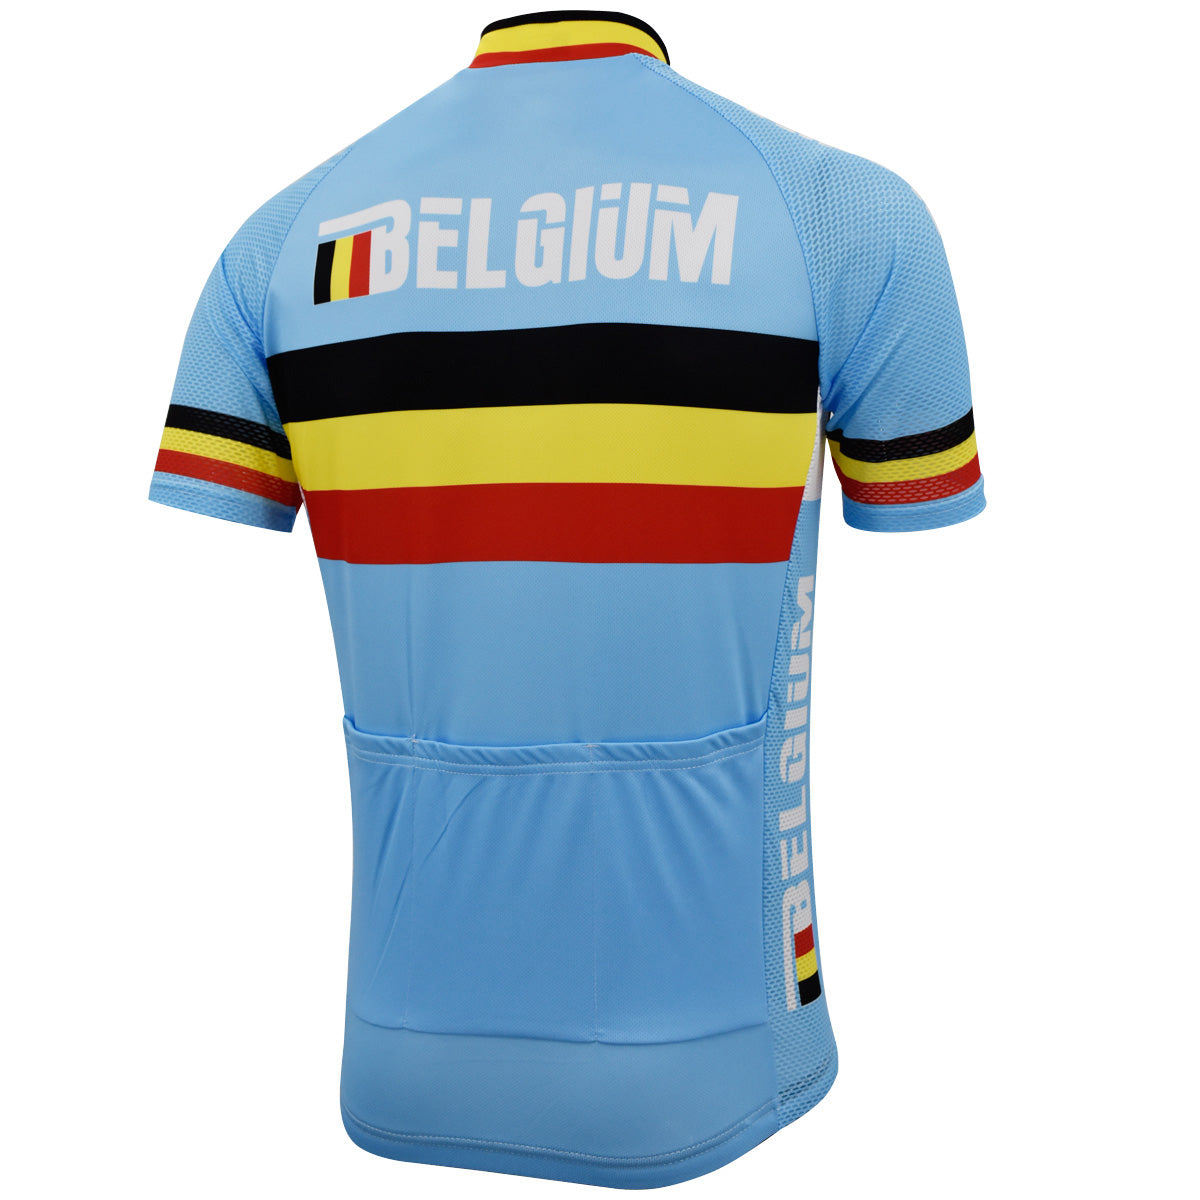 Maillot de cyclisme de l'équipe cycliste belge 2013